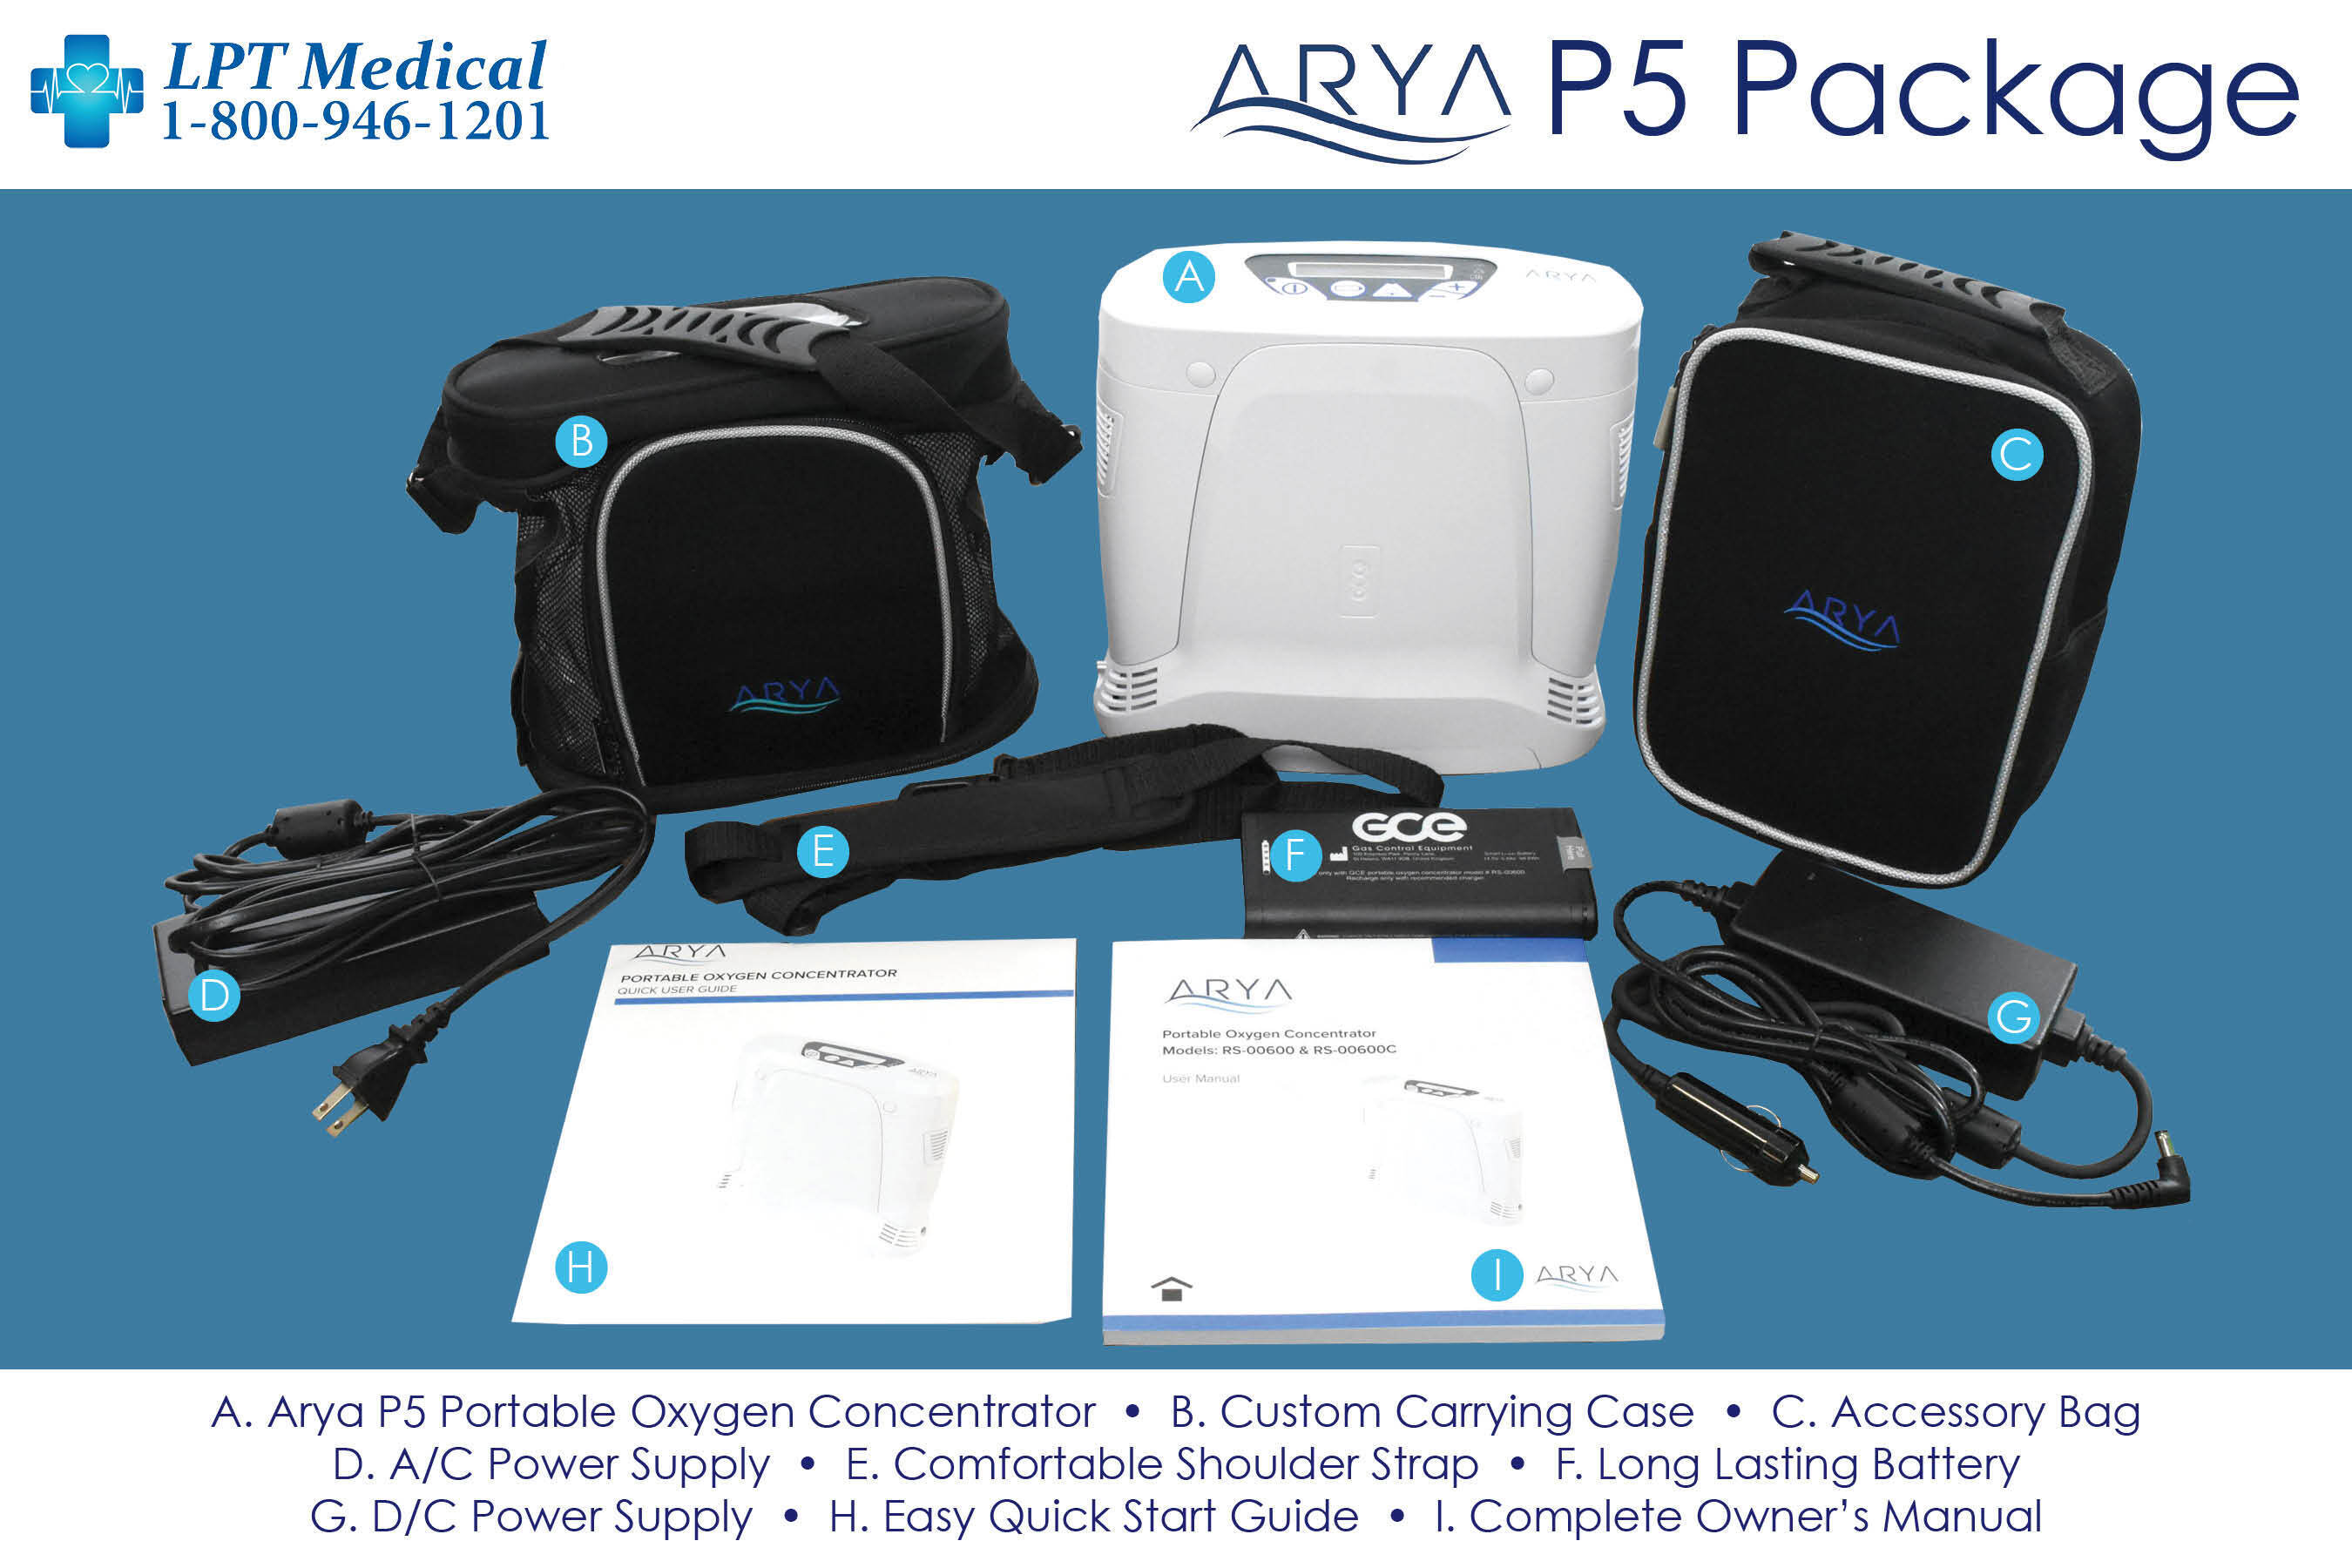 LPT Medical Arya P5 Package